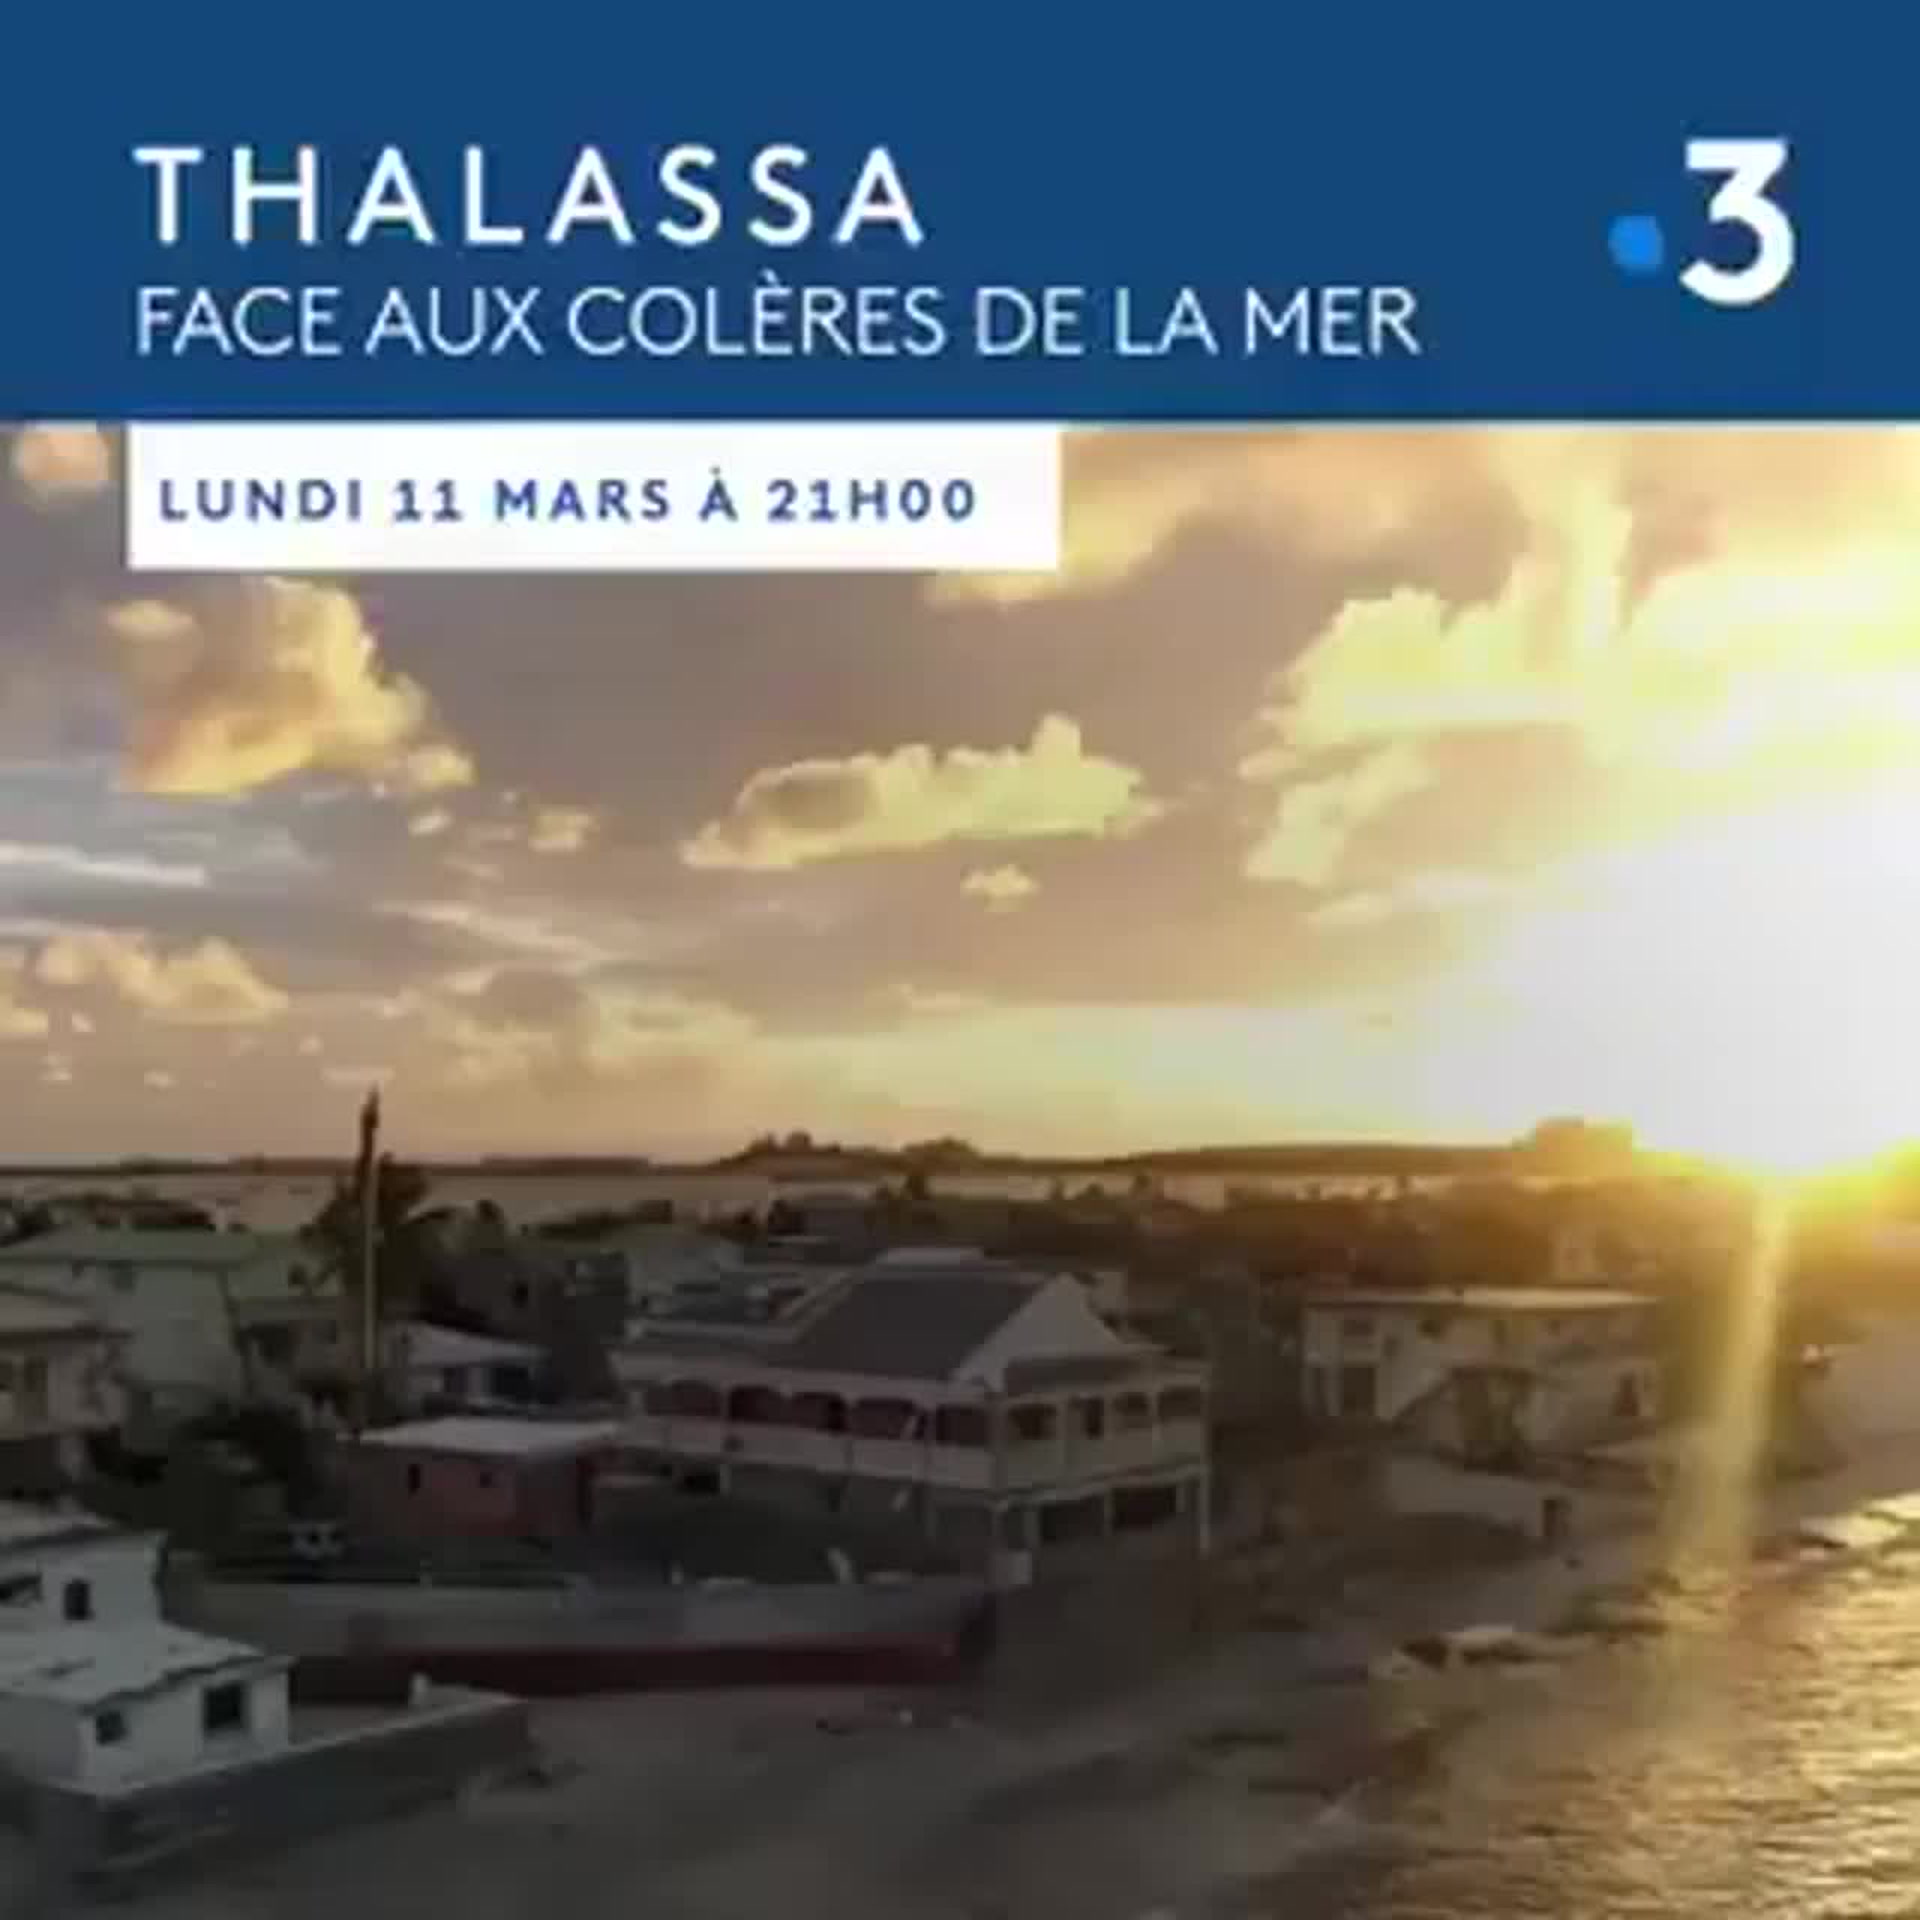 Thalassa : Face aux colères de la mer